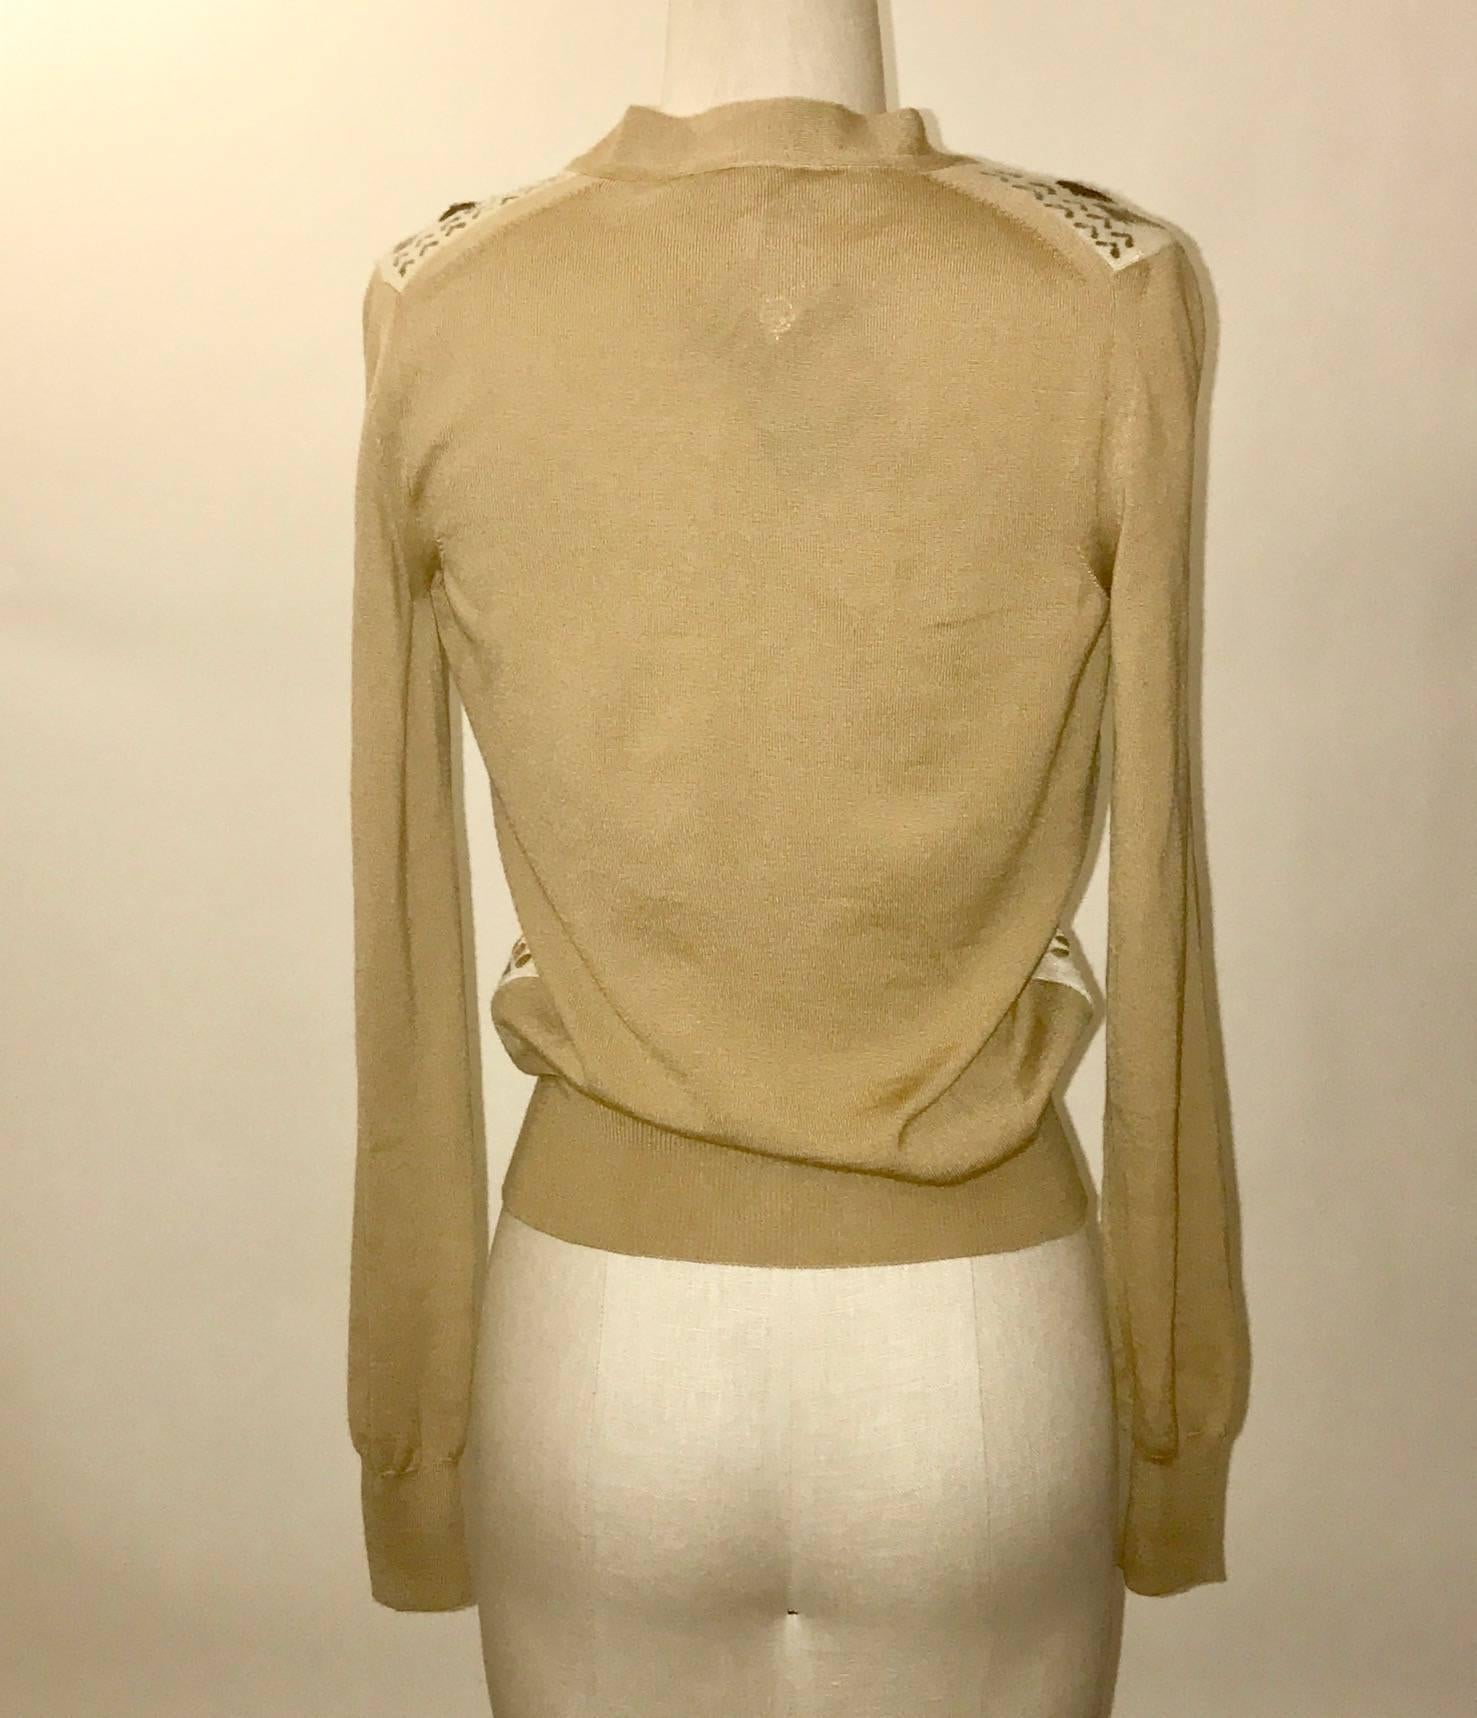 Cardigan boutonné en cachemire Yves Saint Laurent avec un motif géométrique peint sur le devant avec des surpiqûres de fil. 

100% cachemire.

Fabriquées en Italie.

Taille S.
Buste 33